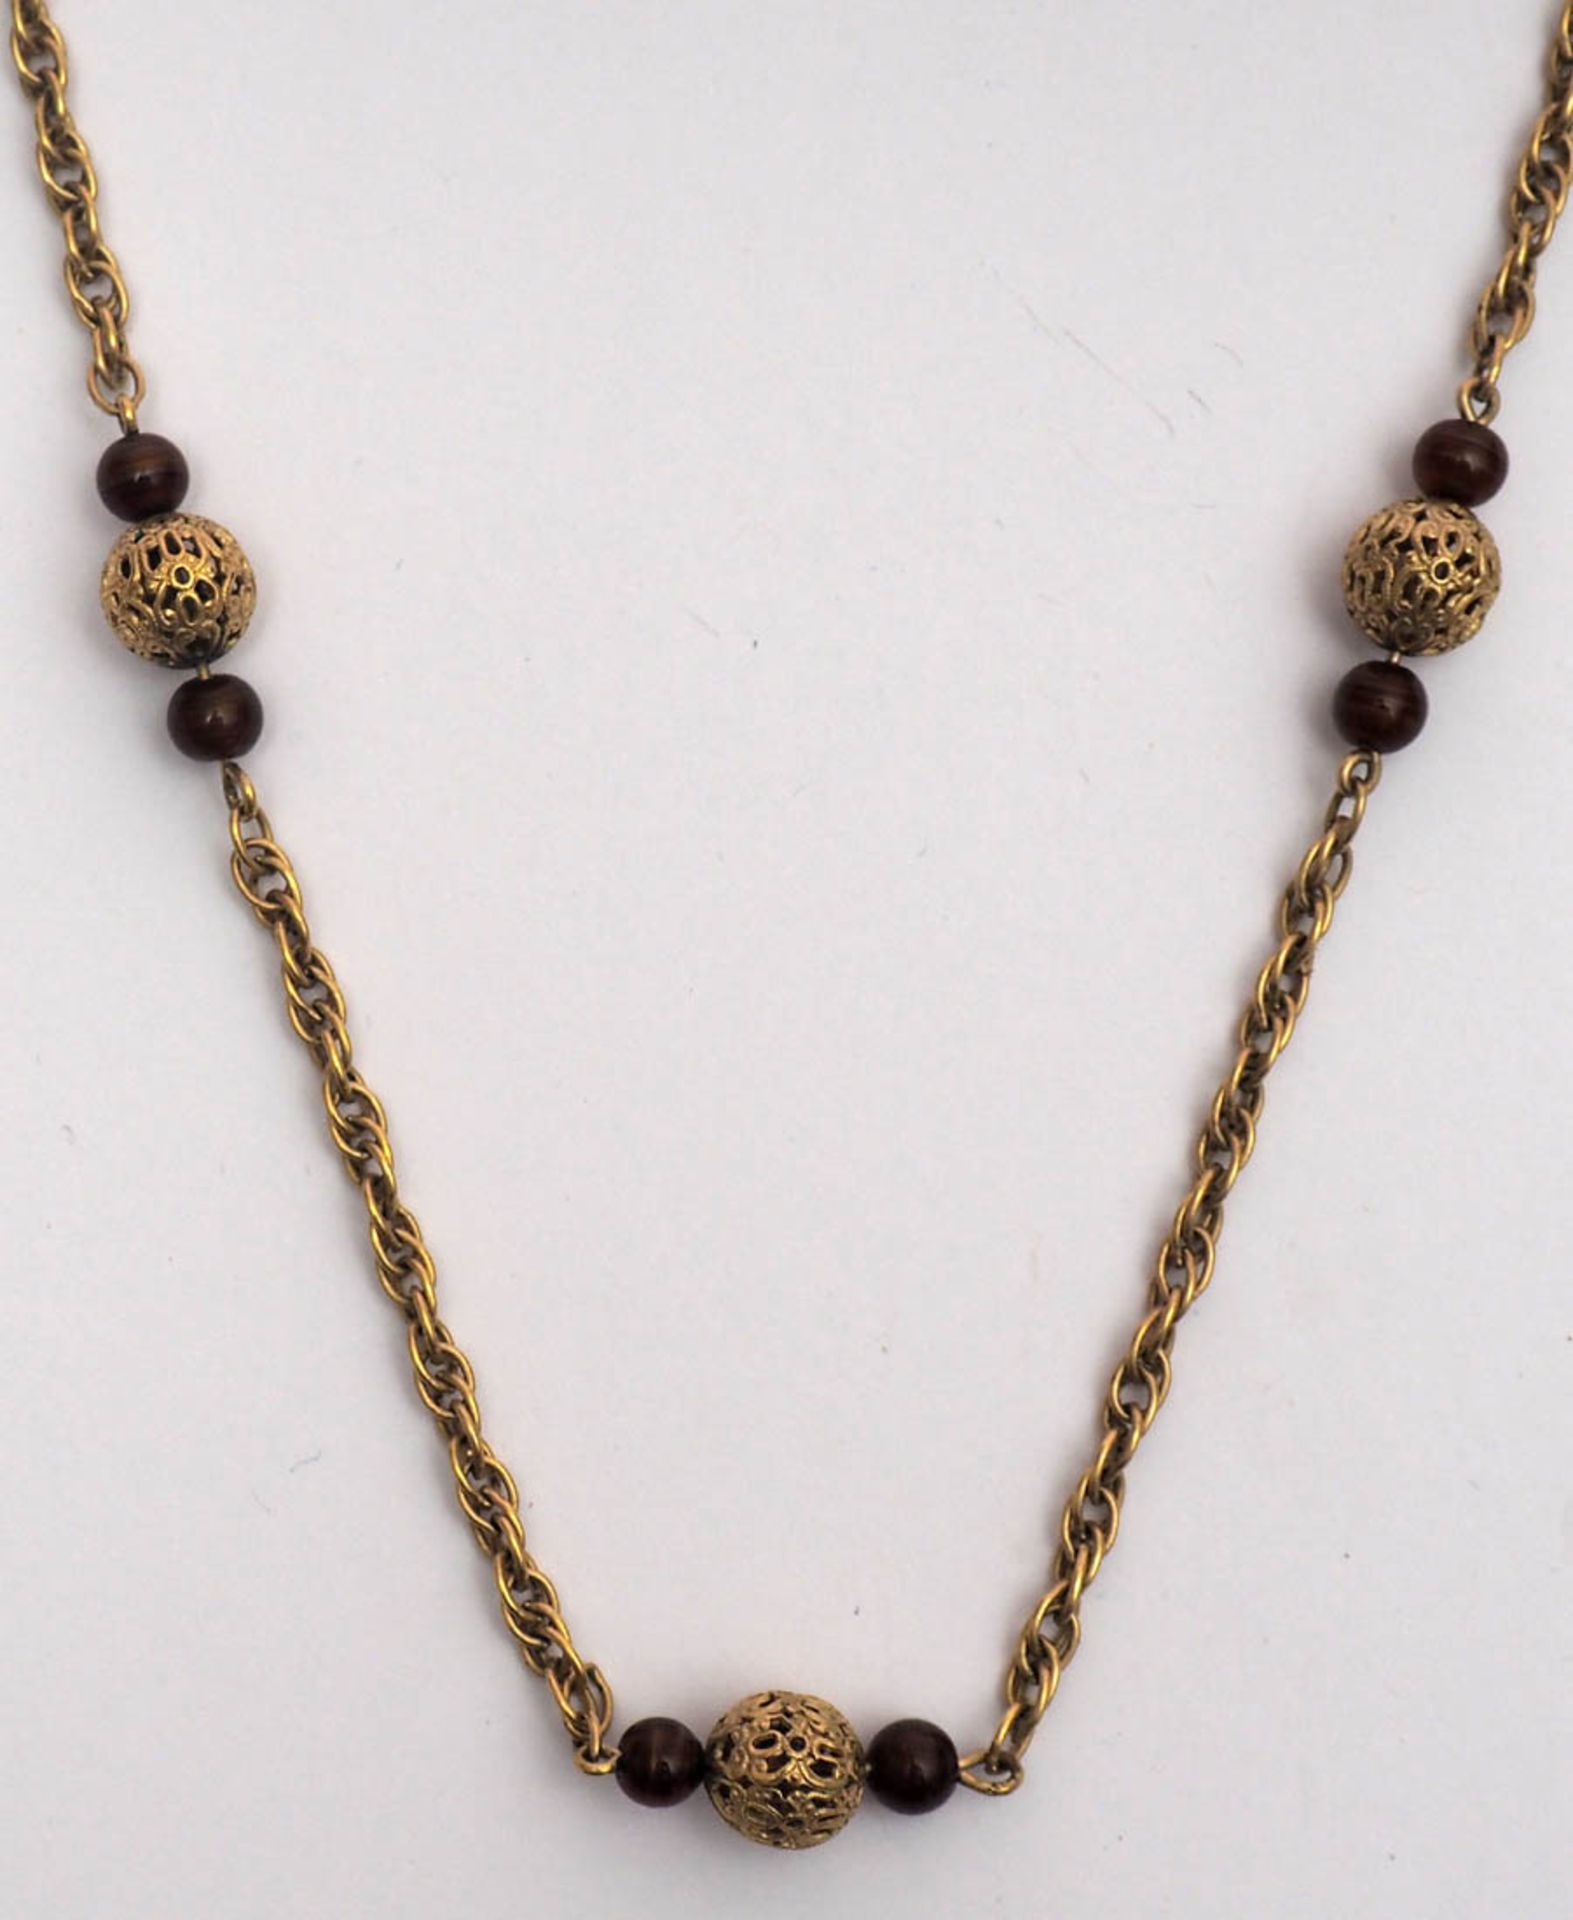 Halskette Kettenglieder in Form von Doppelachten, dazwischen durchbrochen gearbeitete Goldkugeln, - Bild 3 aus 5